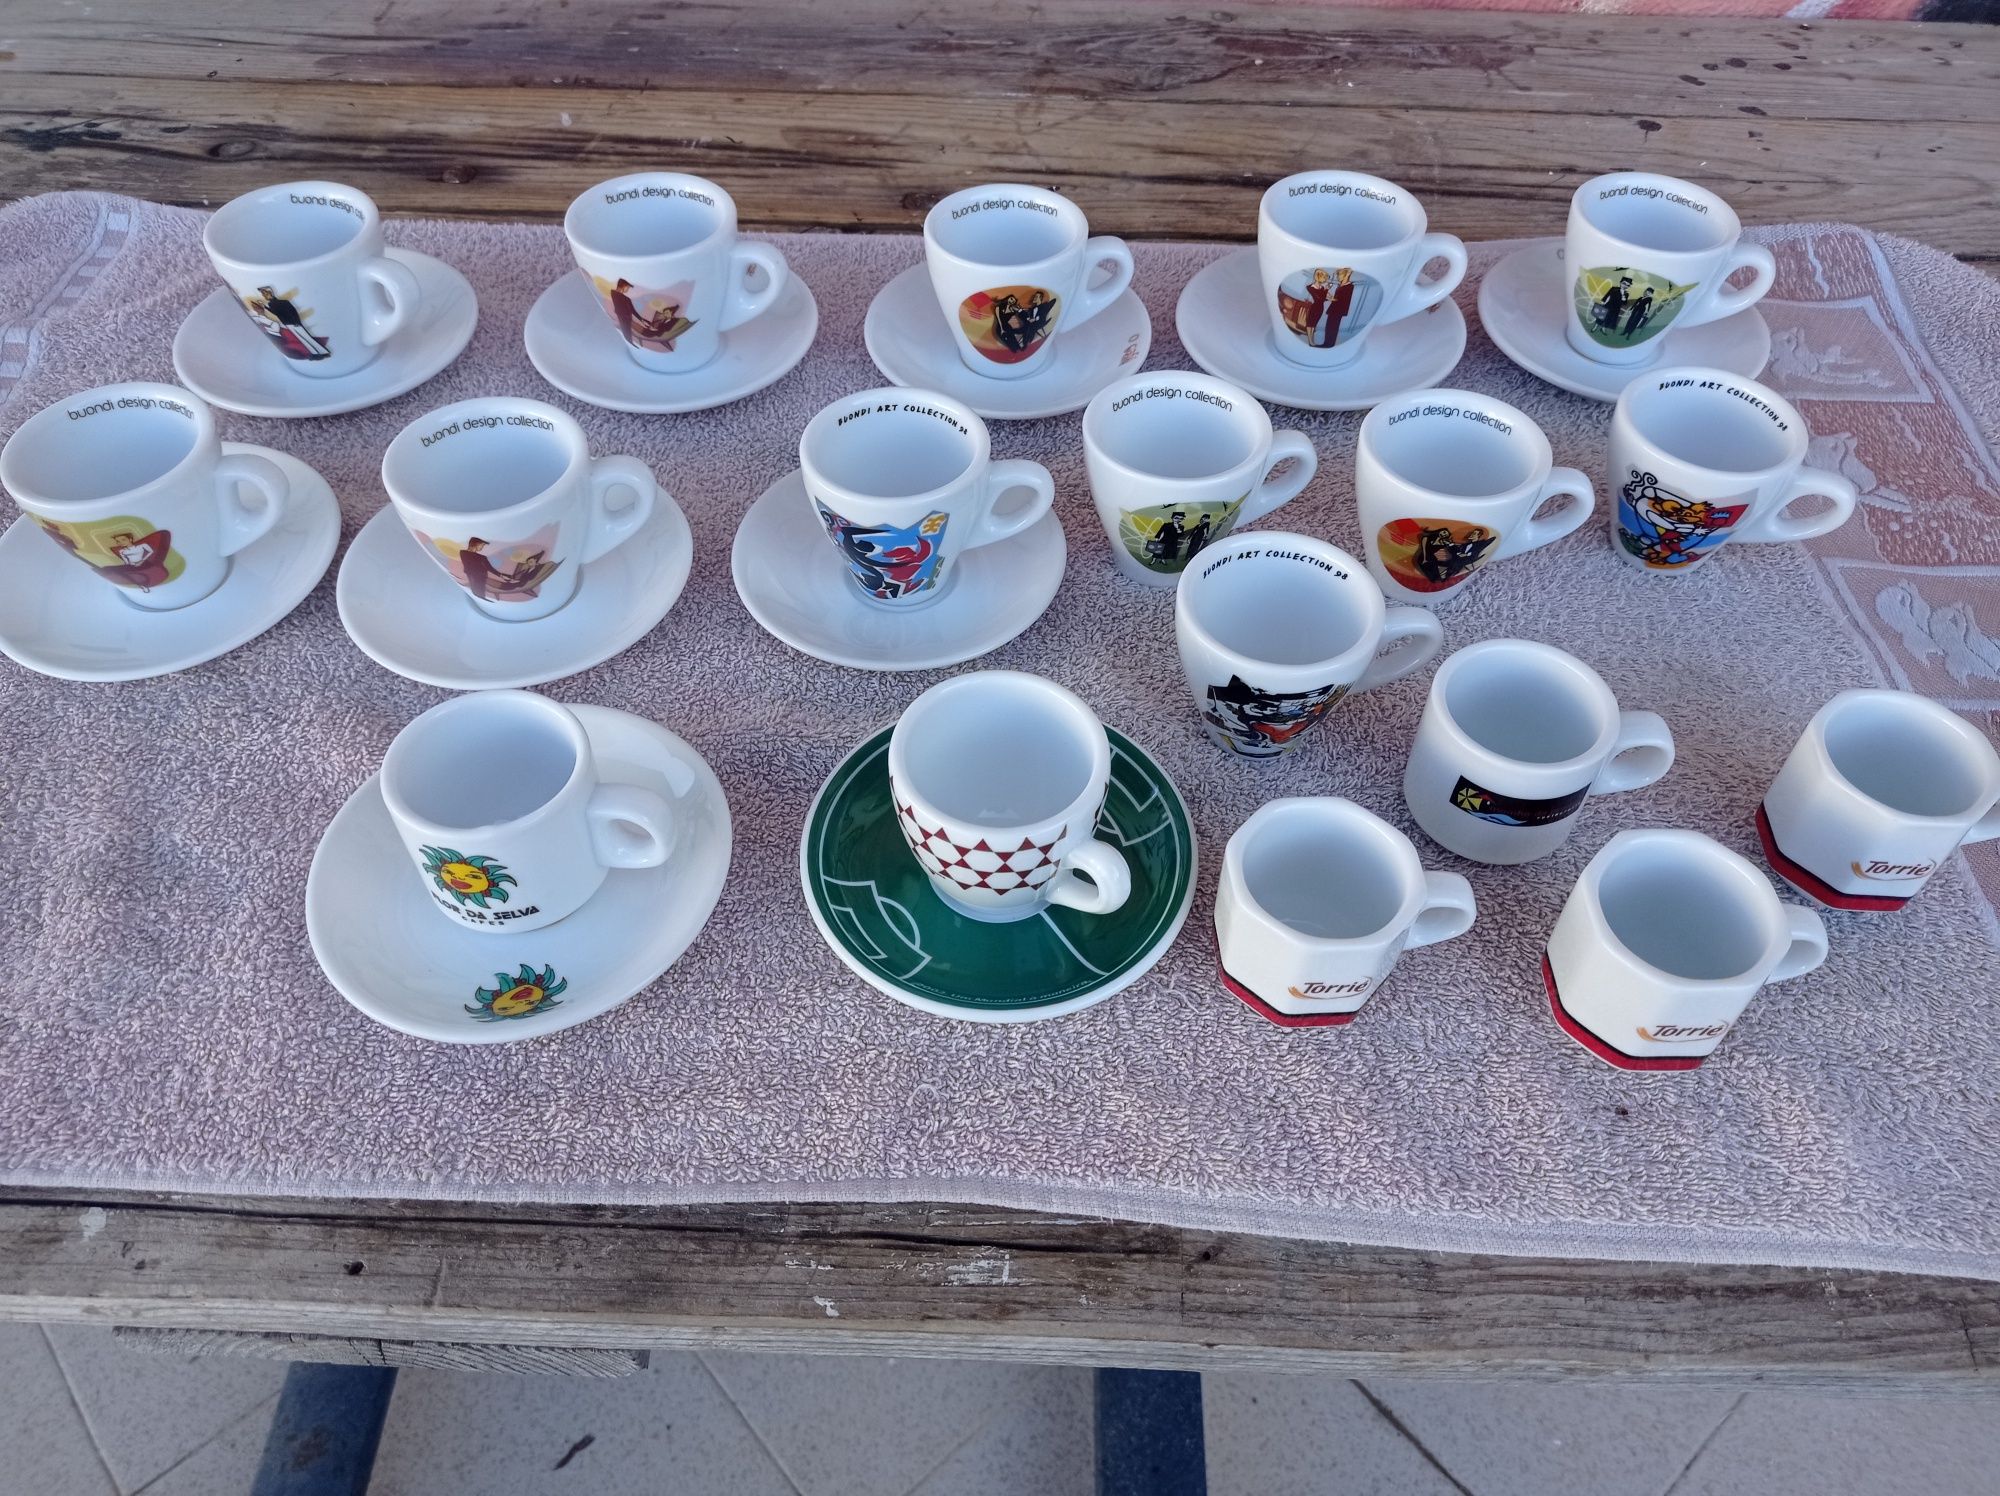 Chávenas de café coleção, Buondi, Torriè, Flor da Selva e Delta.